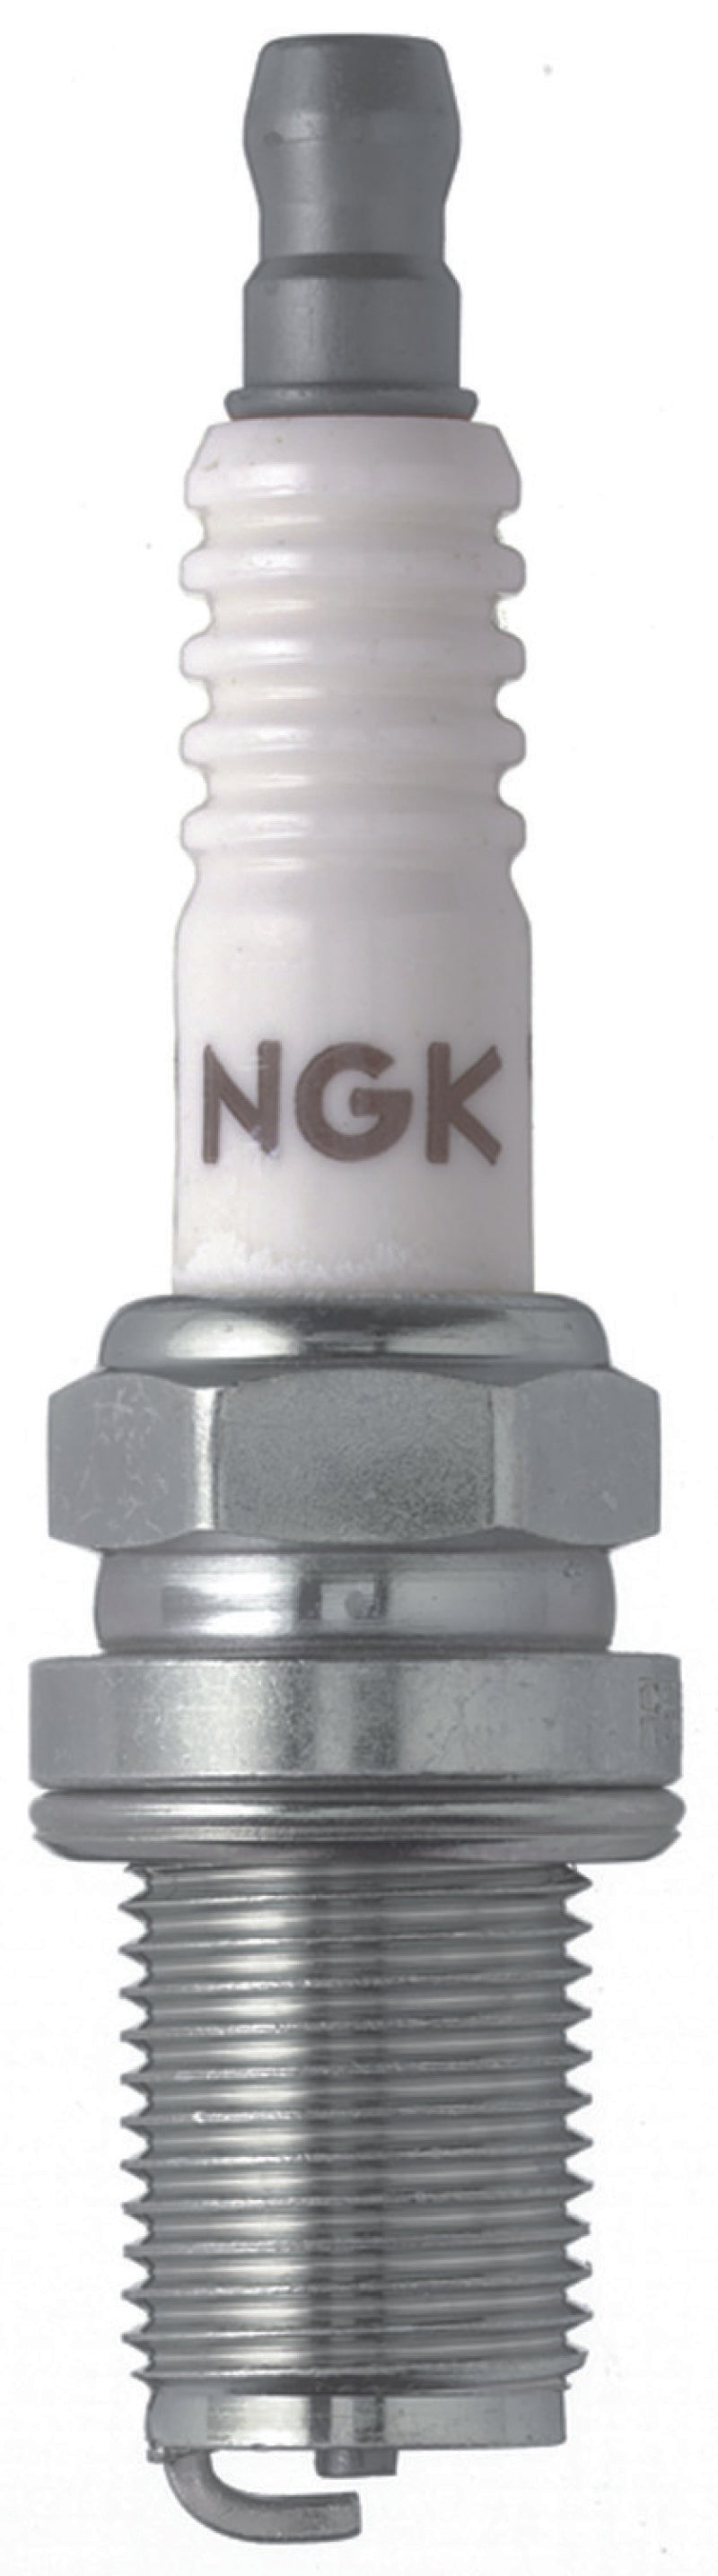 NGK Racing Spark Plug Box of 4 (R5671A-8)